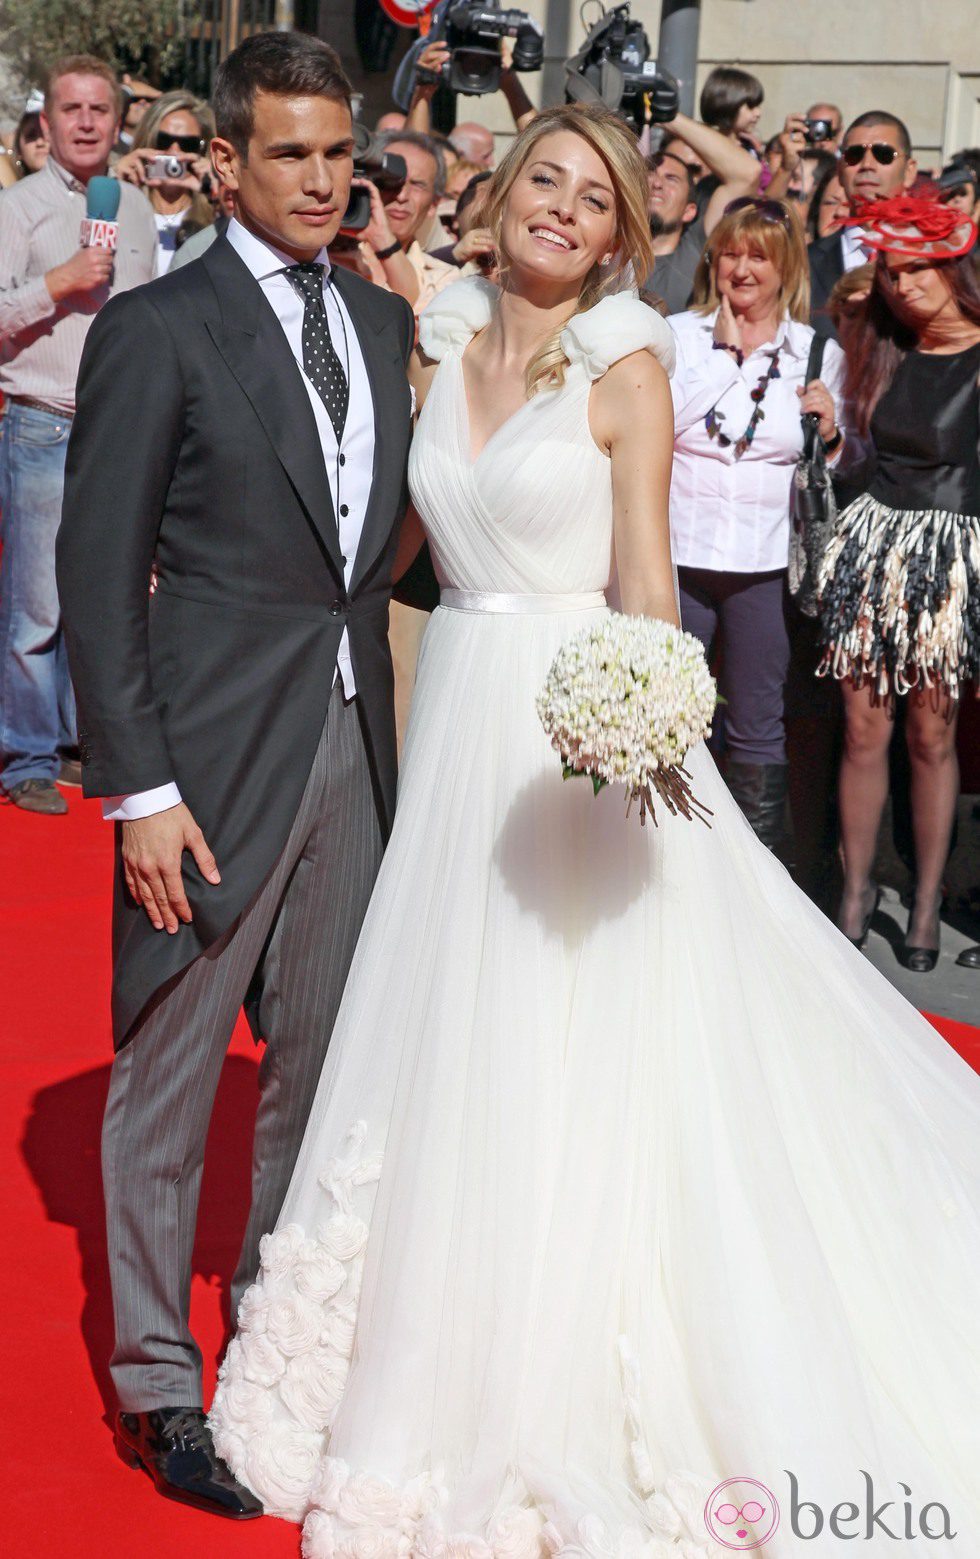 Rocío Escalona se casó con José María Manzanares con un vestido de Manuel Mota